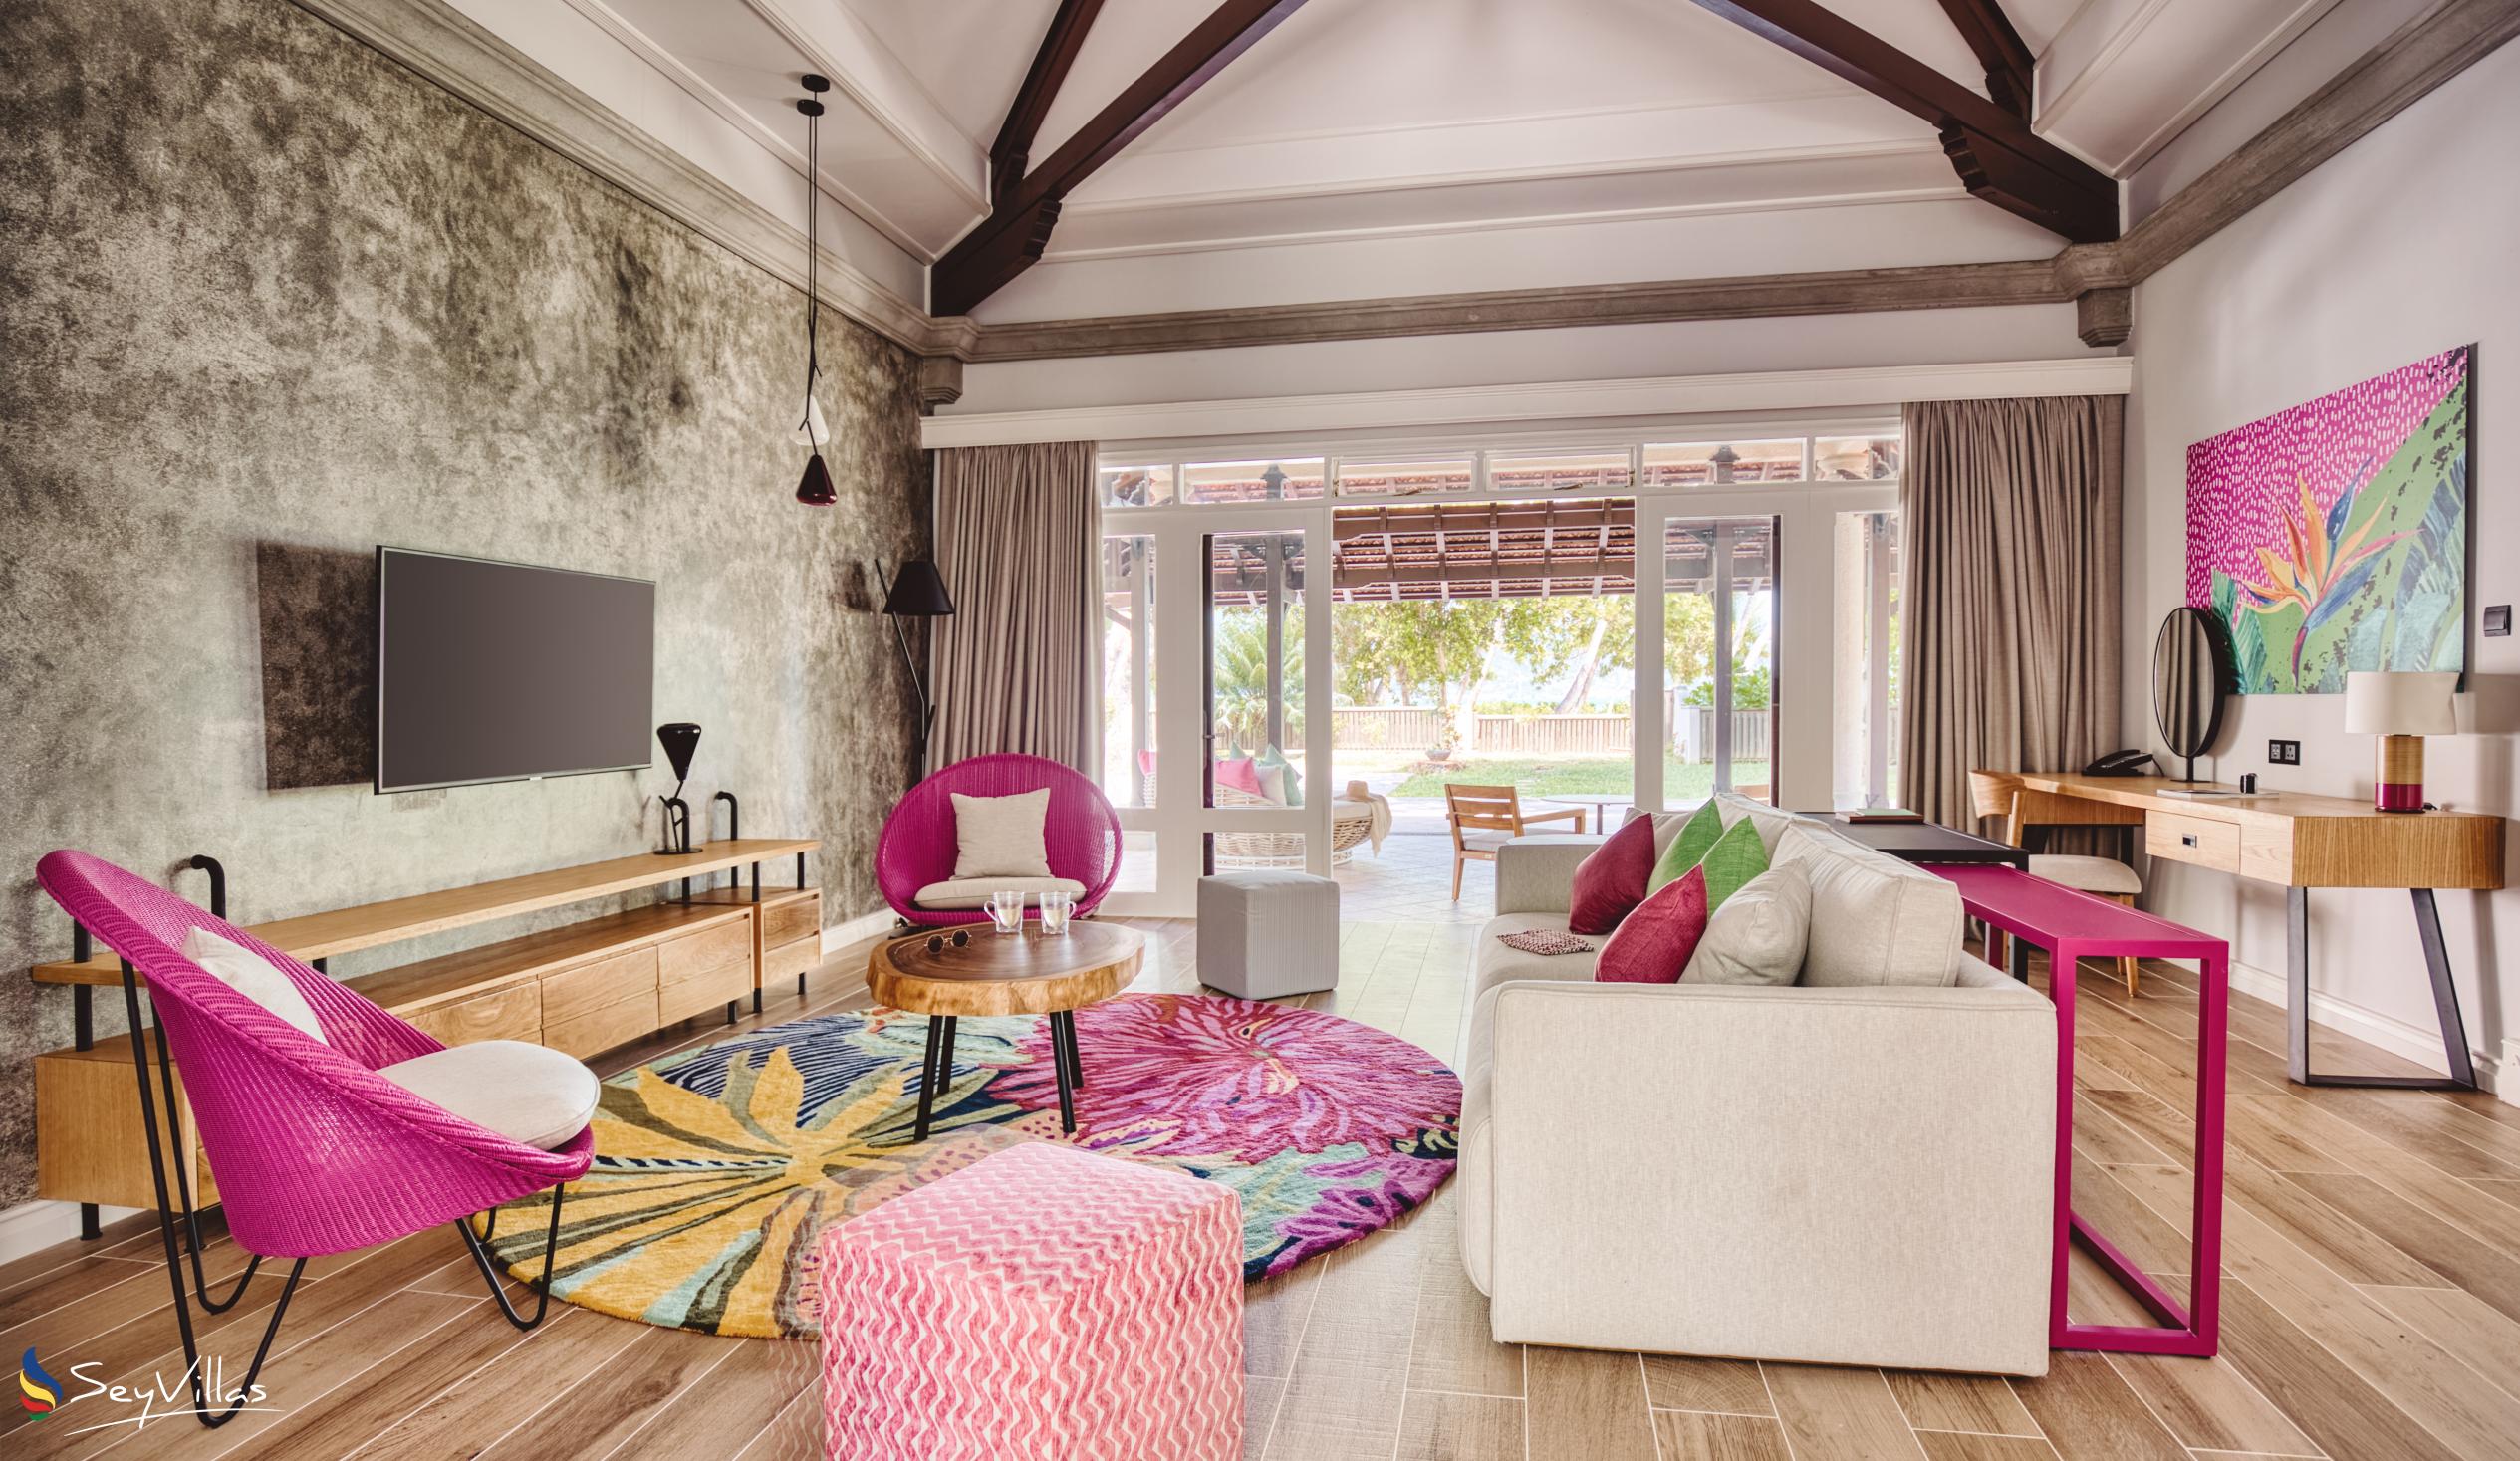 Foto 140: Club Med Seychelles - Suite mit Meerblick und privatem Pool - Saint Anne (Seychellen)